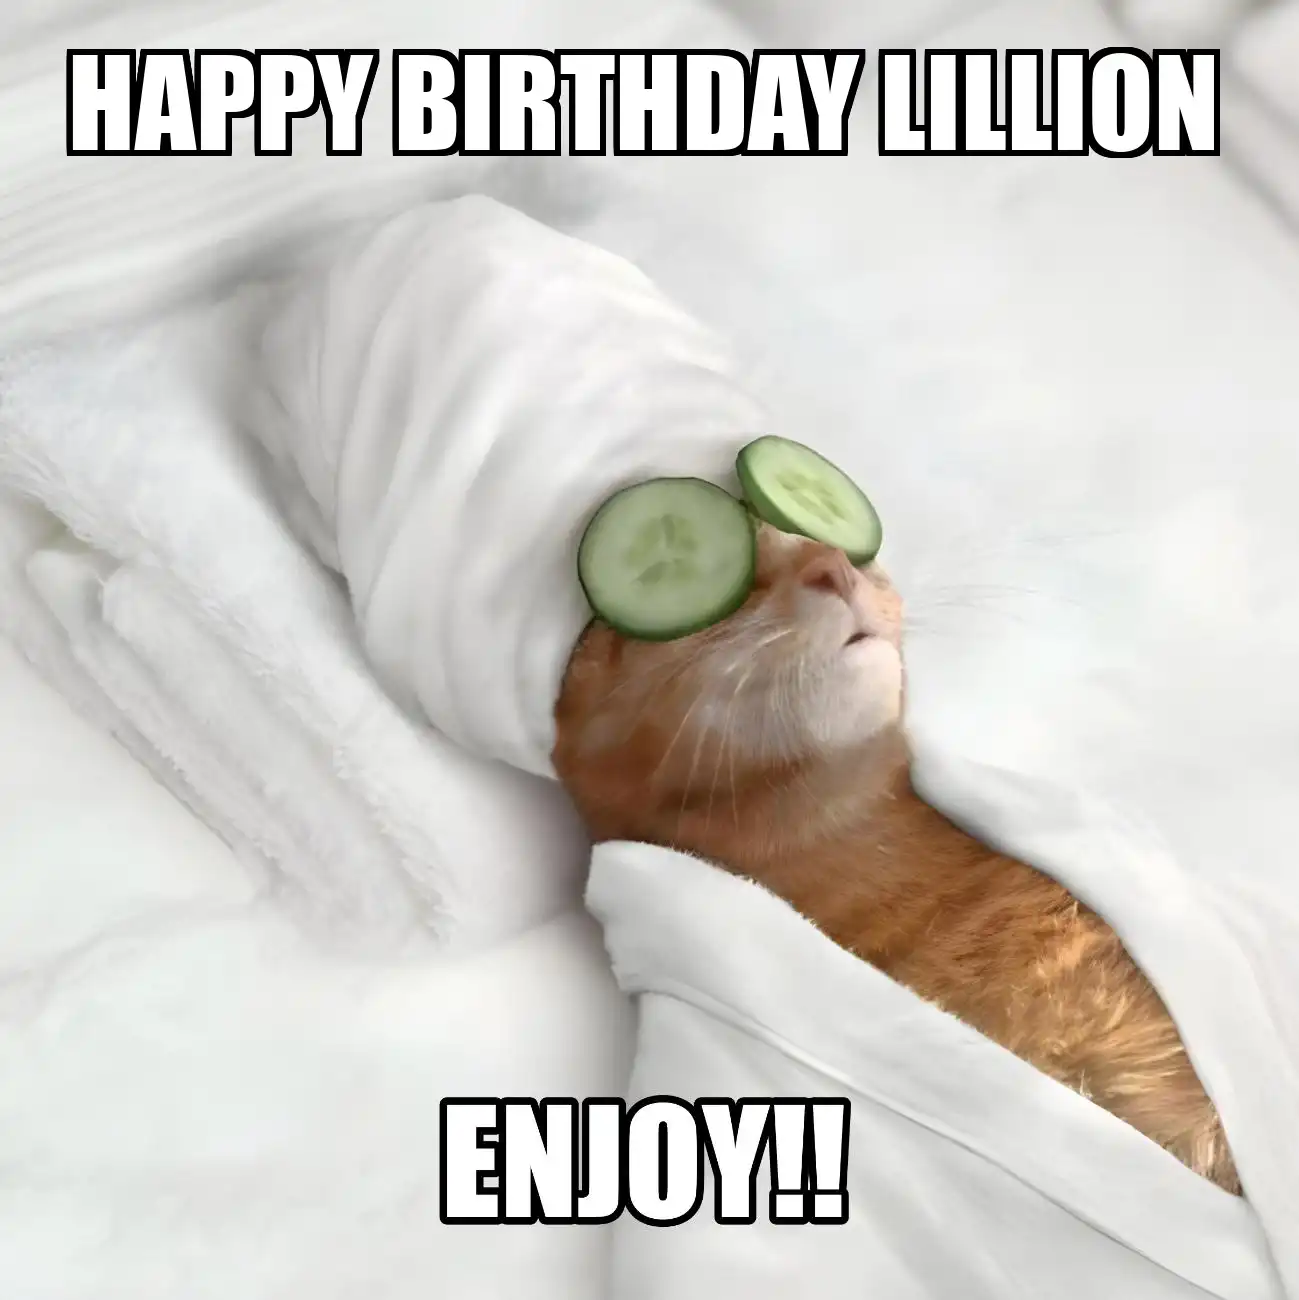 Happy Birthday Lillion Enjoy Cat Meme